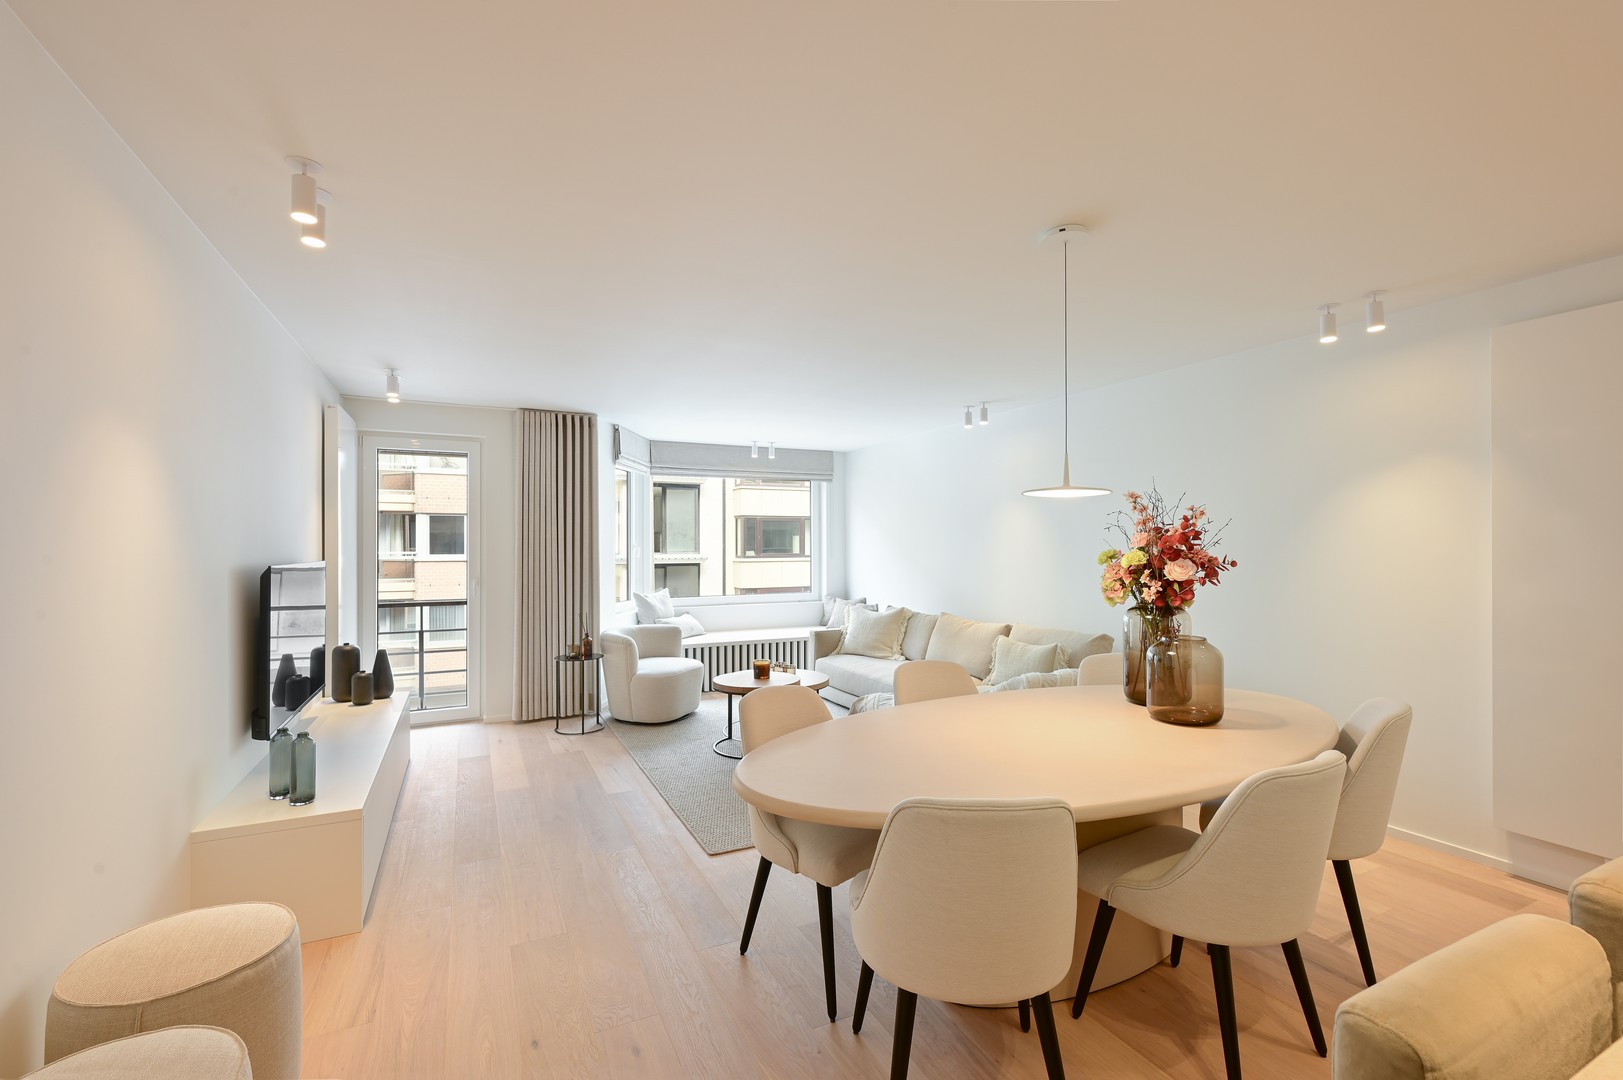 Te koop Knokke Real Estate appartement zeezicht - salon